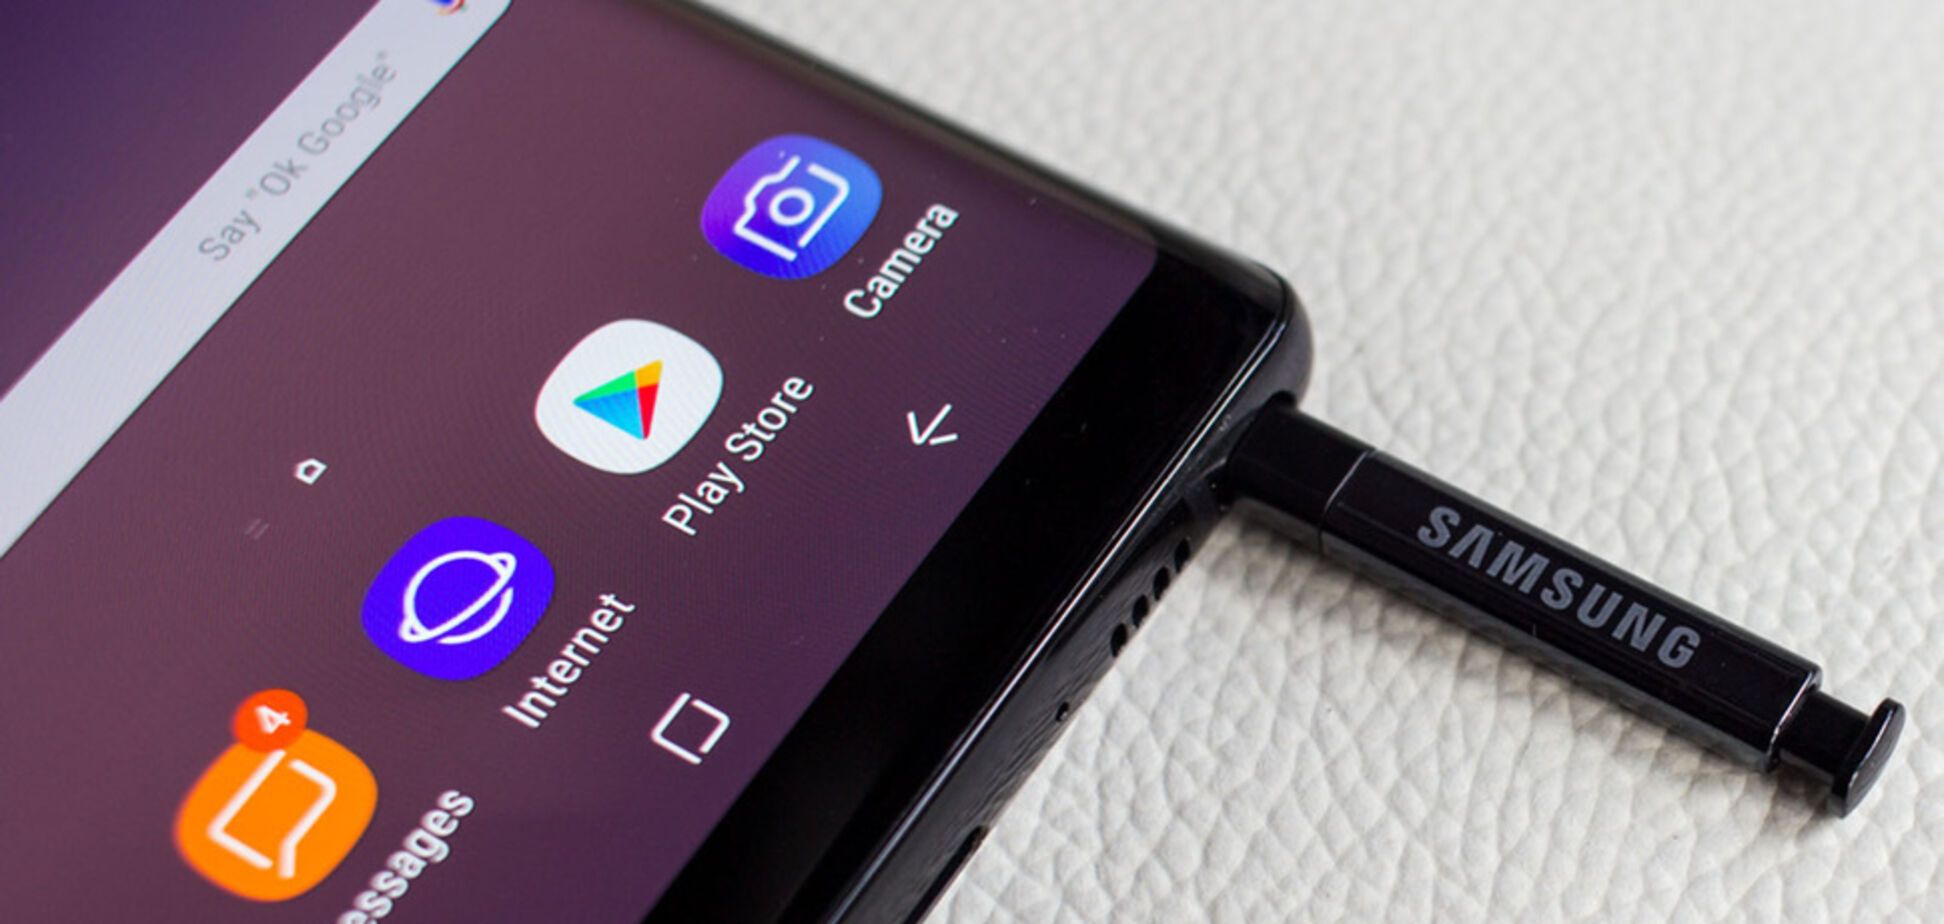 Названо 'секретное' имя Samsung Galaxy Note 9 